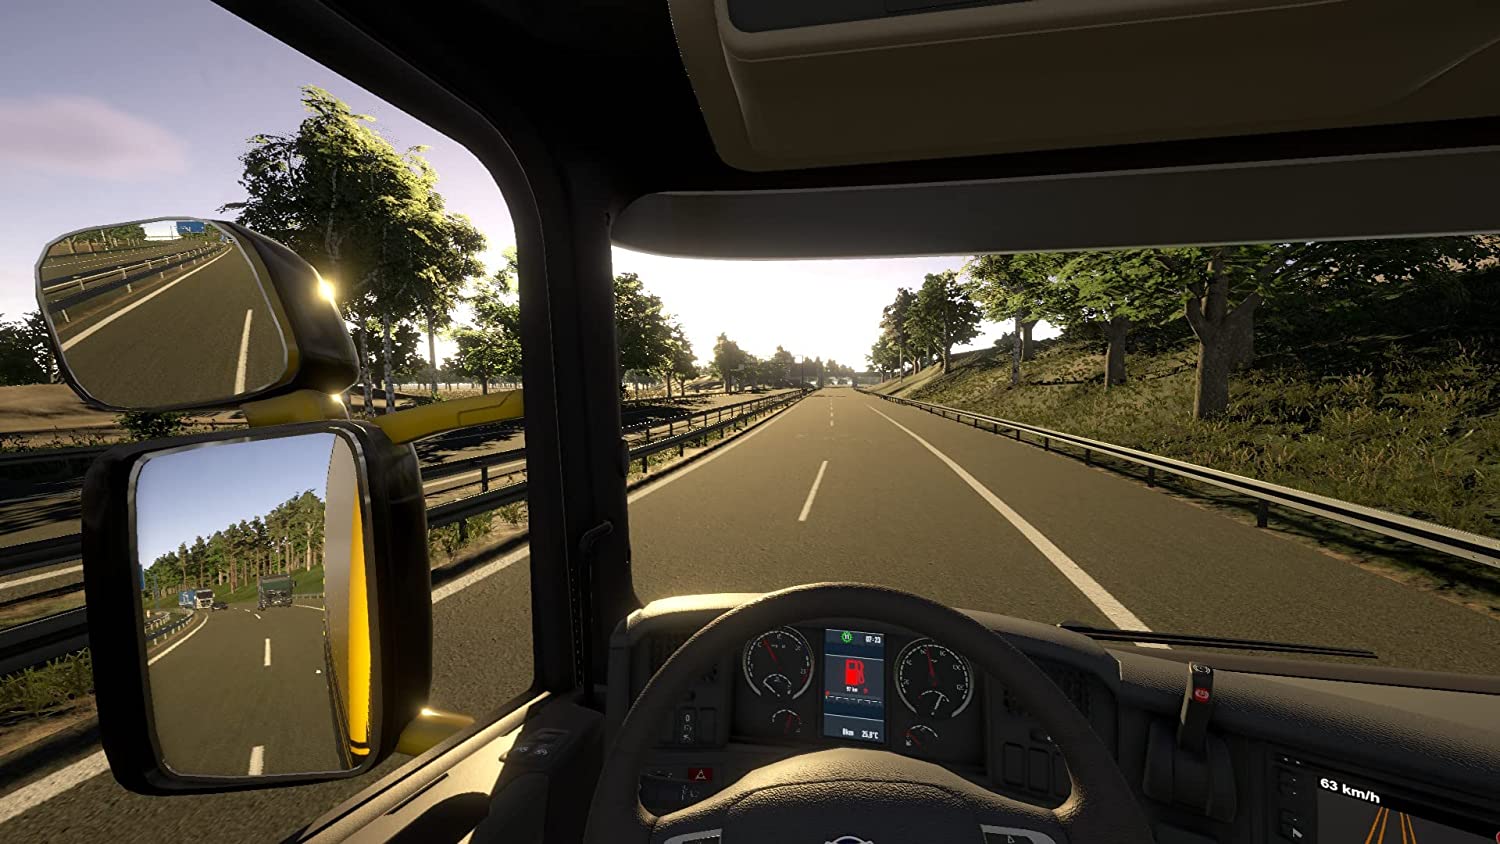 Simulador de caminhão de PS5 e Xbox, On The Road